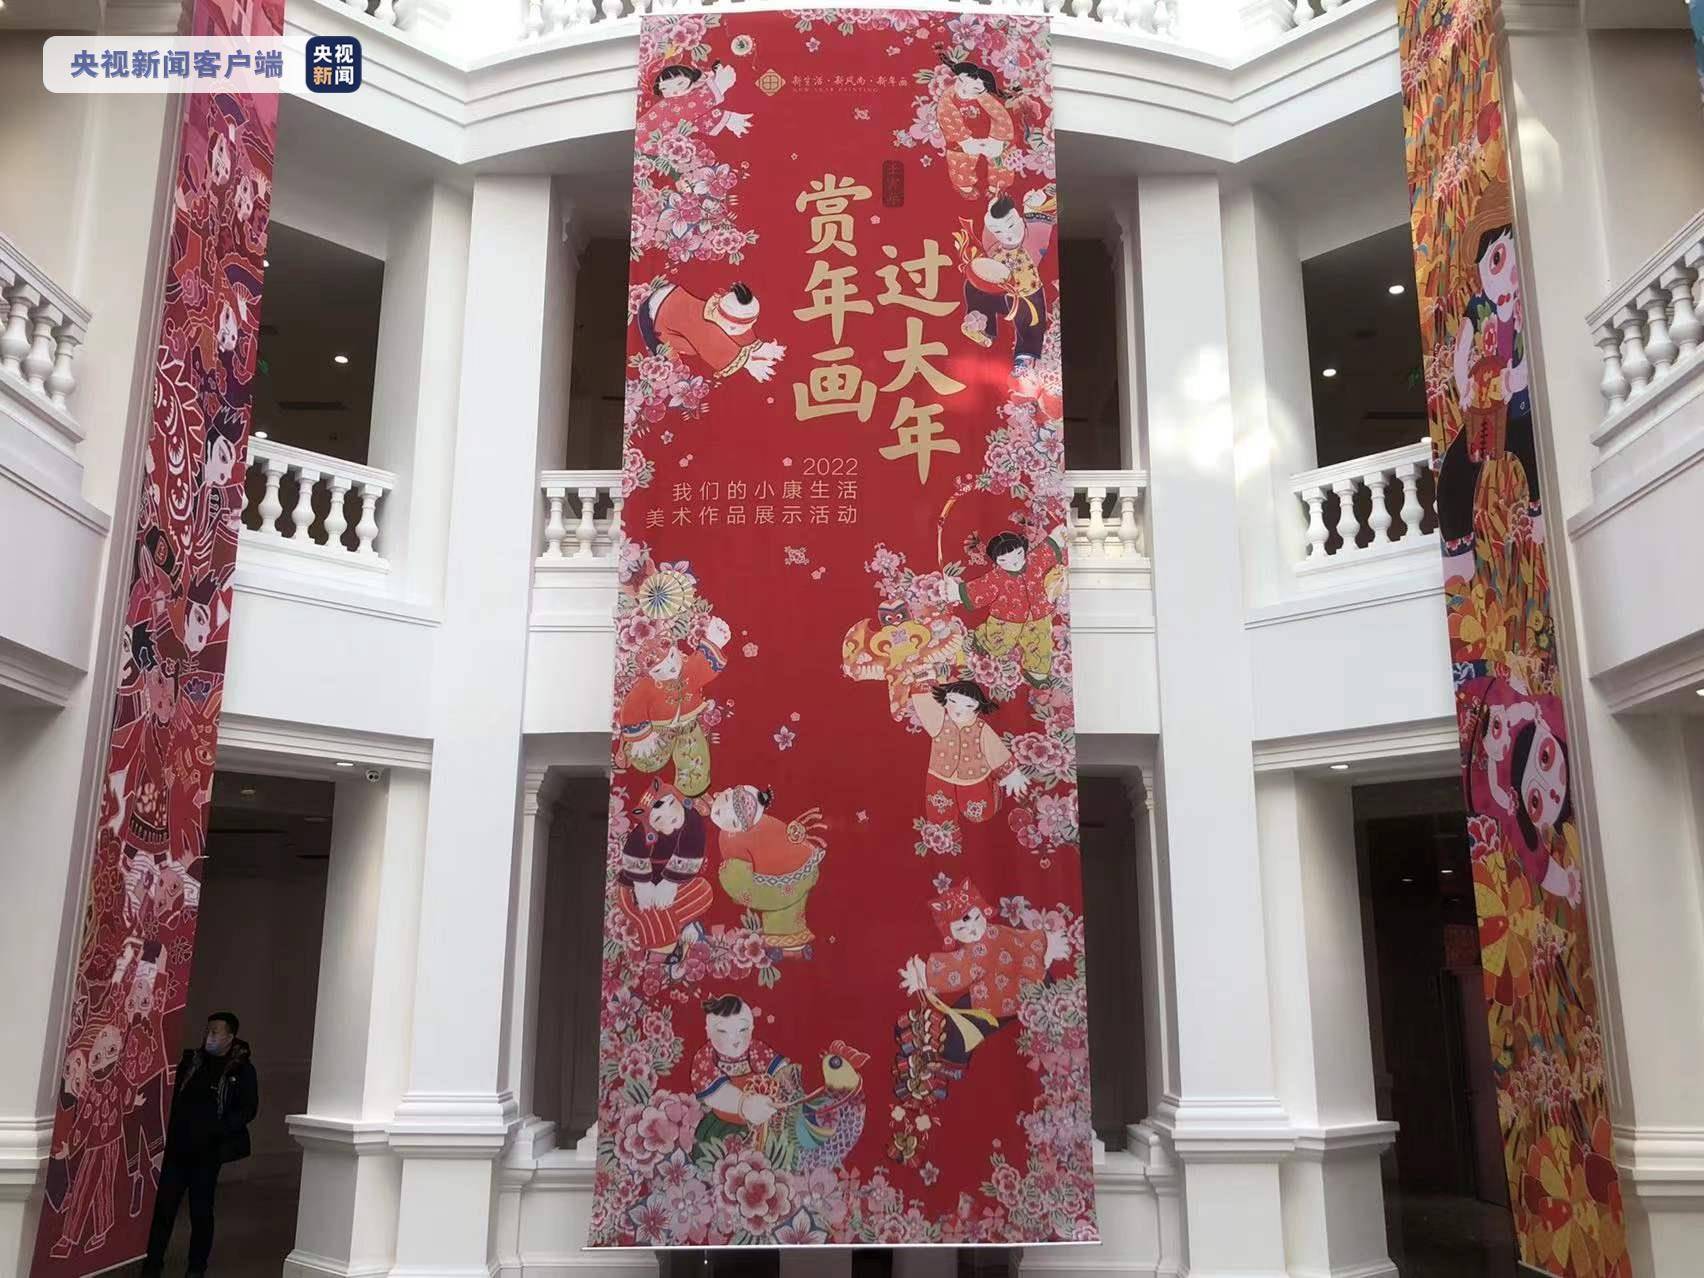 中轴线上赏年画 北京举办“赏年画过大年”系列活动喜迎新春